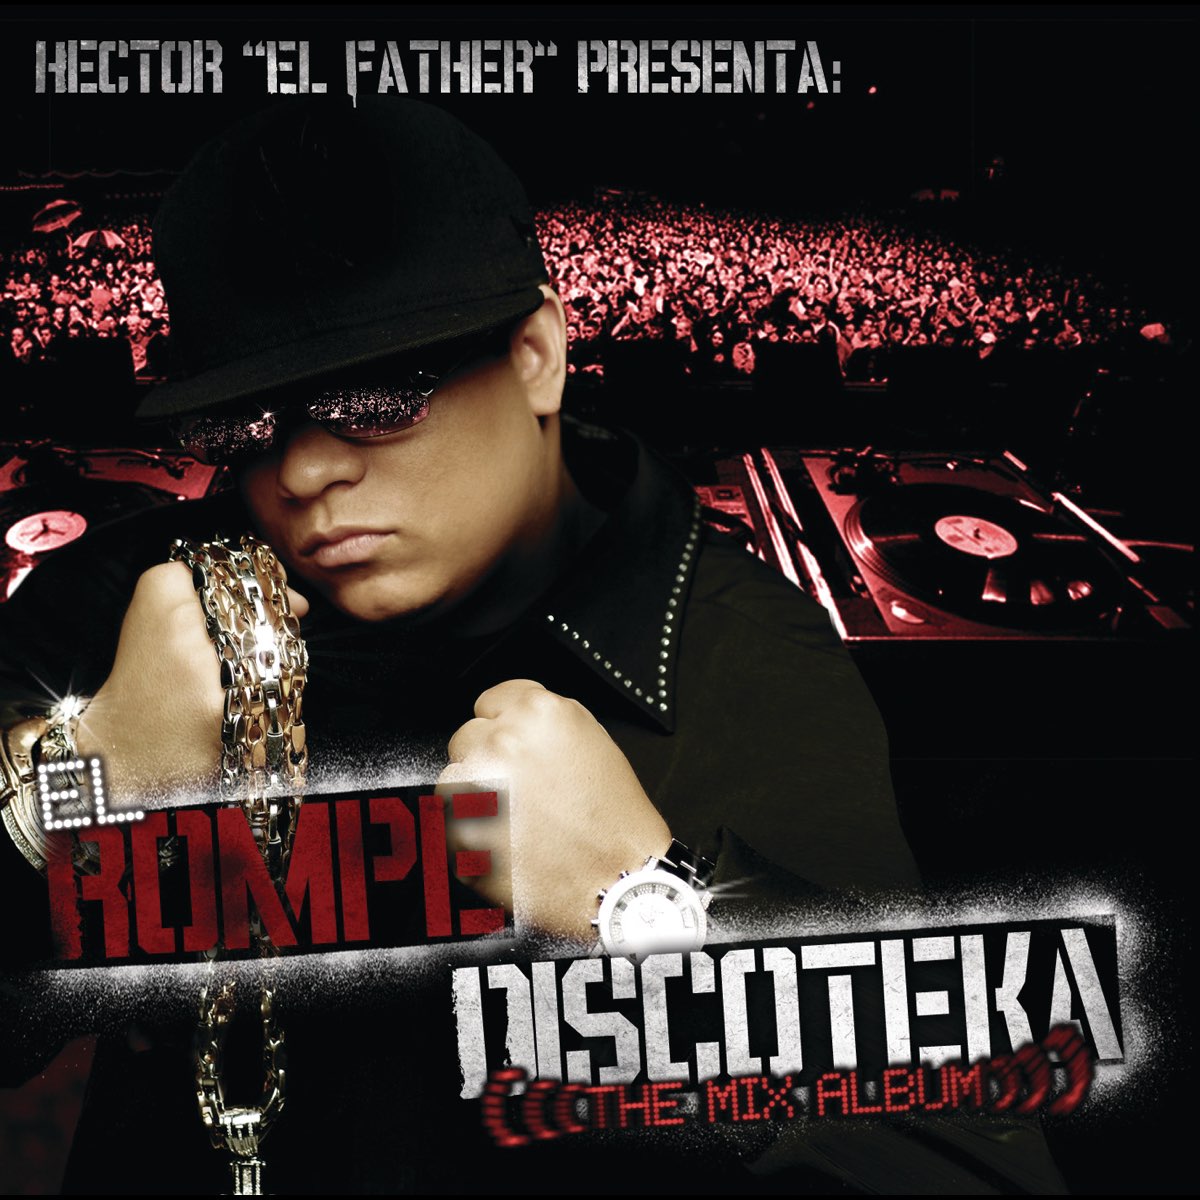 ‎El Rompe Discoteka (The Mix Album) - Album by Héctor El Father - Apple ...